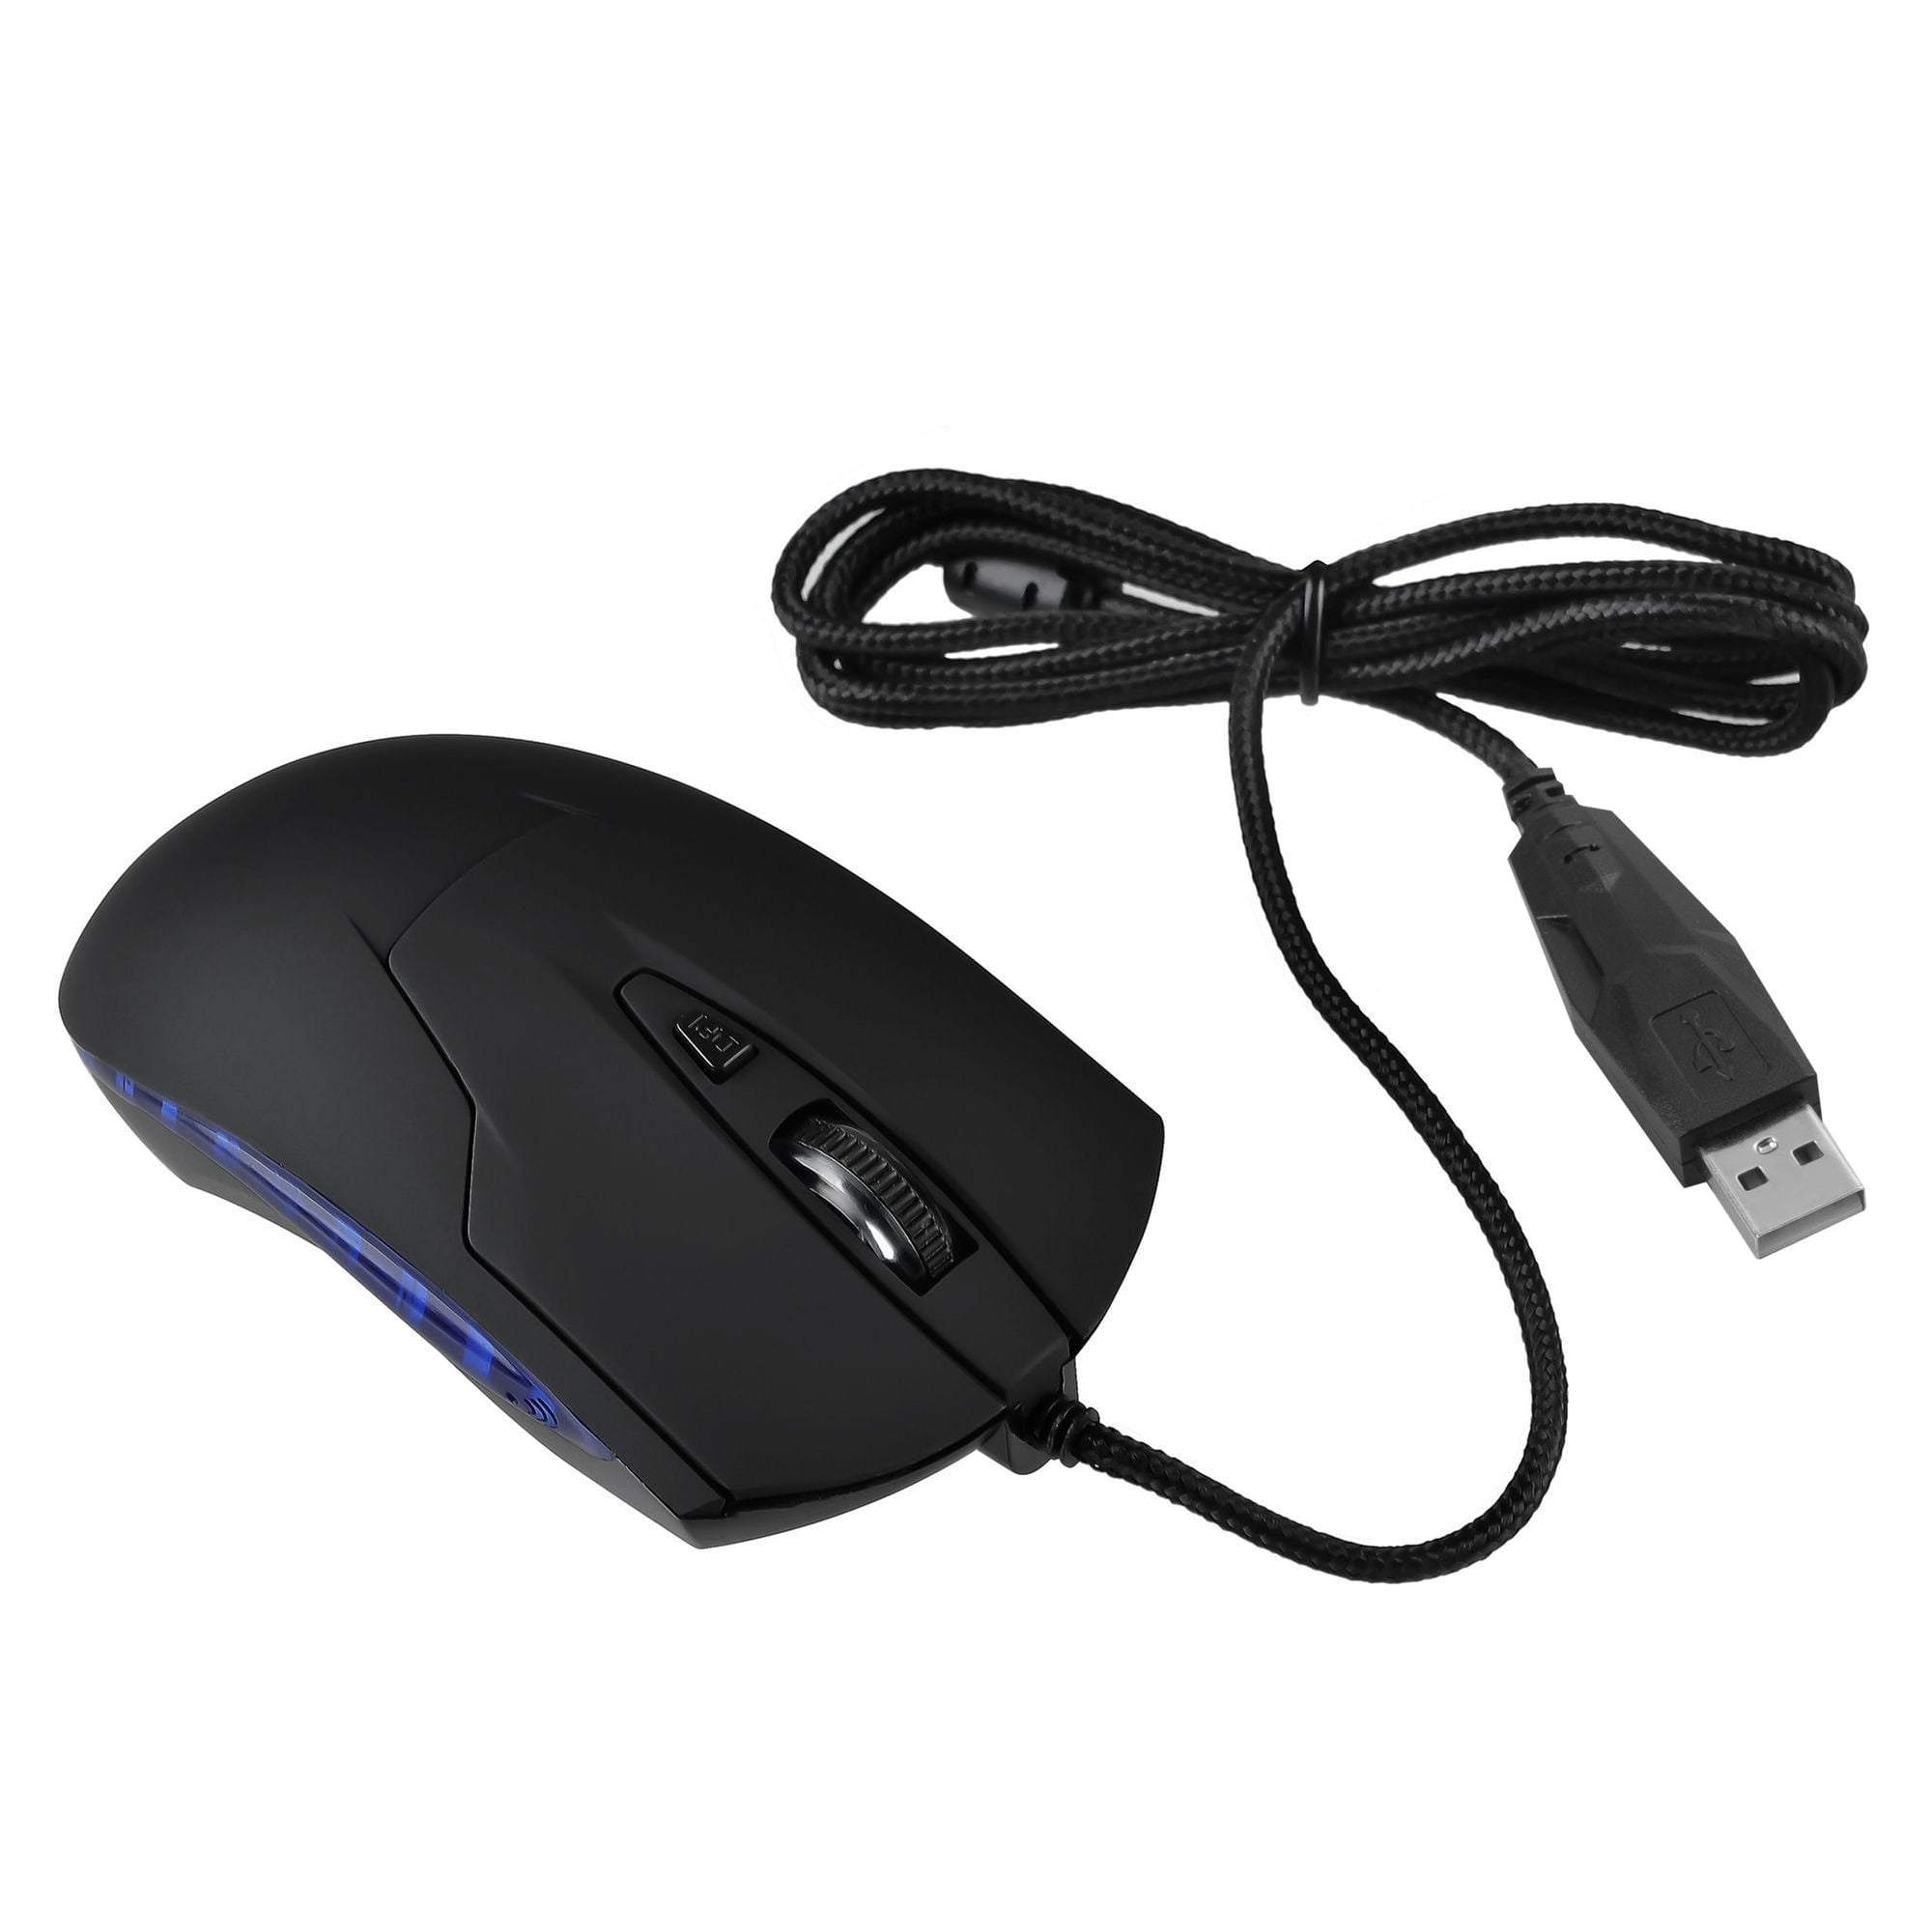 Не видит usb мышь. Юсб оптикал Маус. USB wired Optical Mouse PF_b4903. Игровая мышка c29 Optical Mouse. Com мышка.